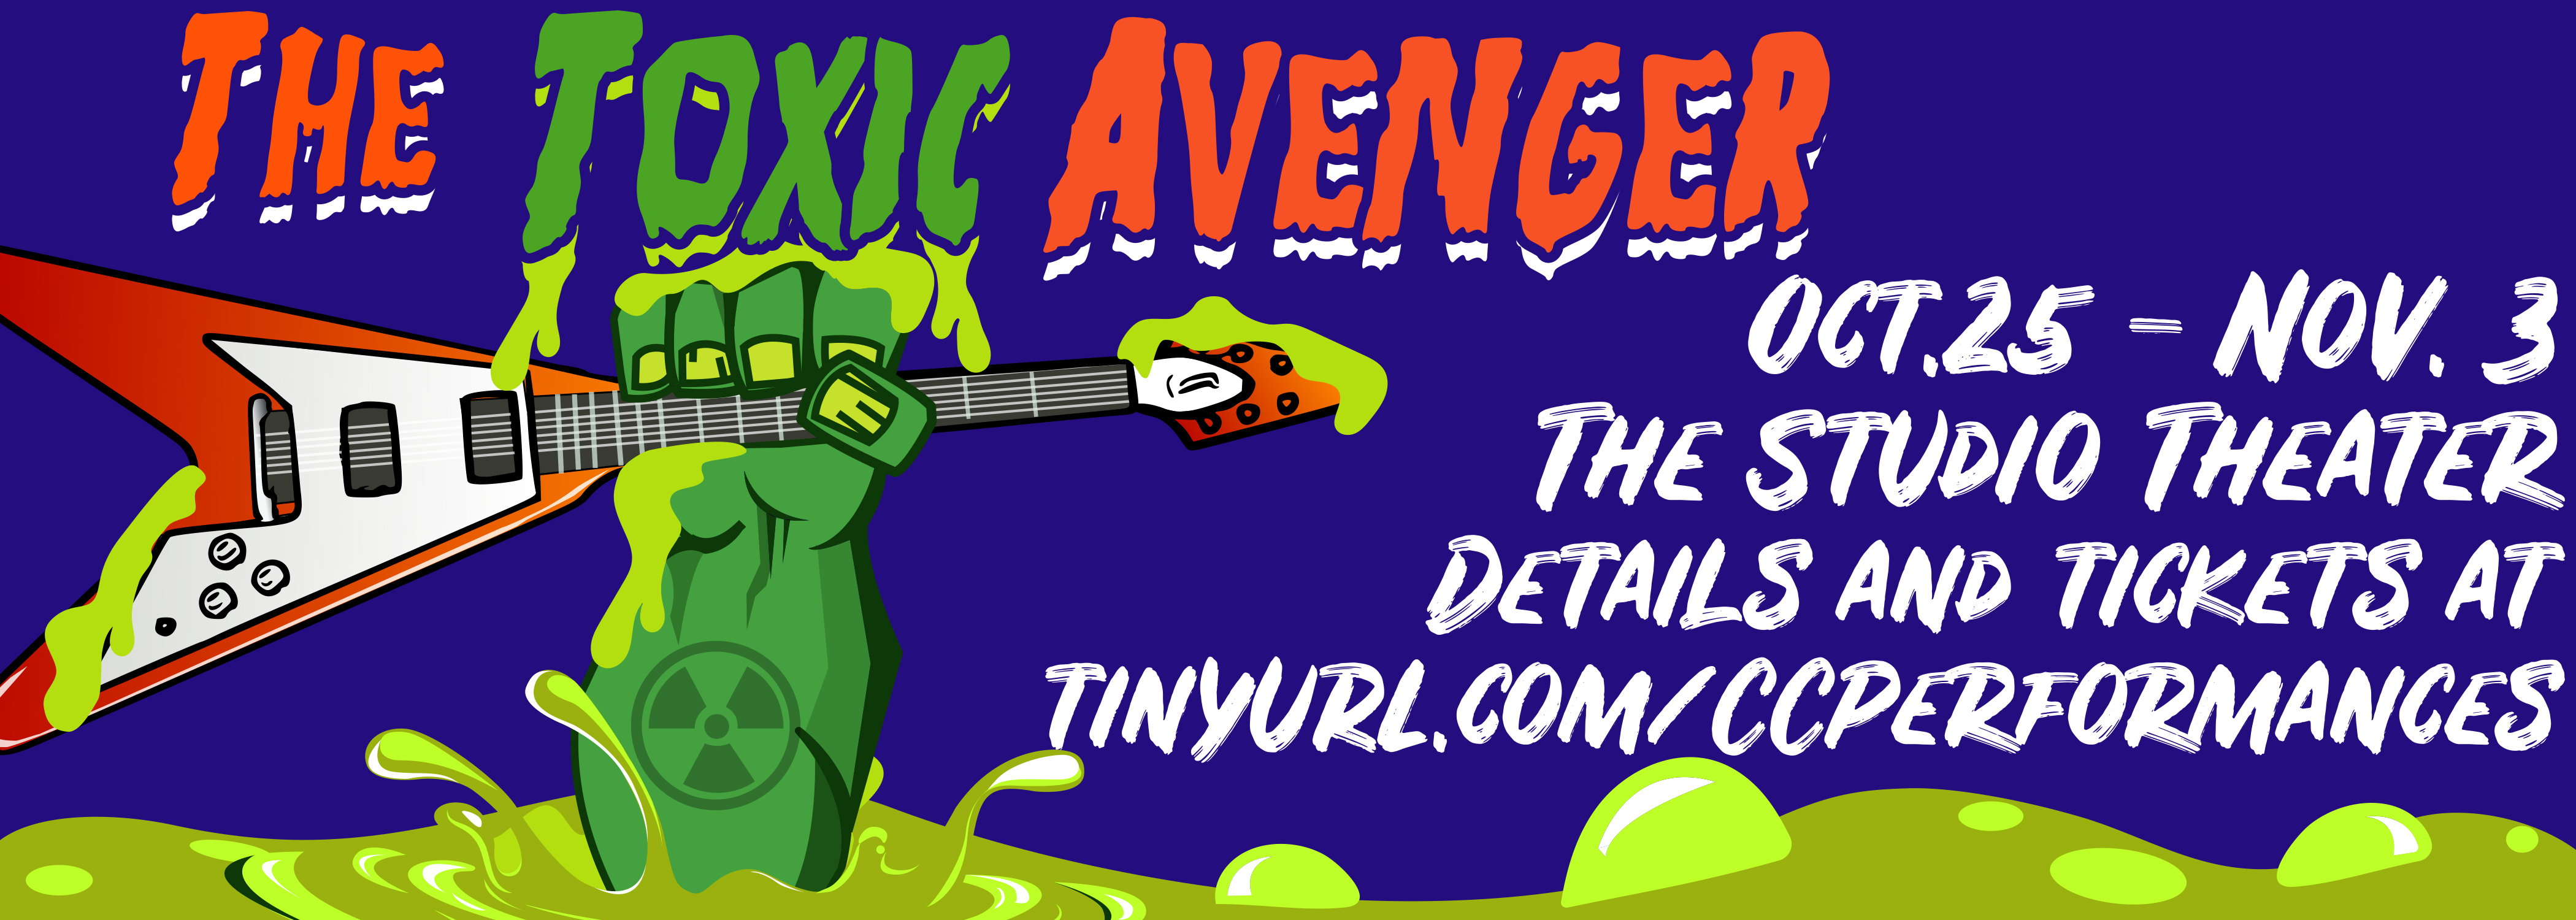 The Toxic Avenger flyer